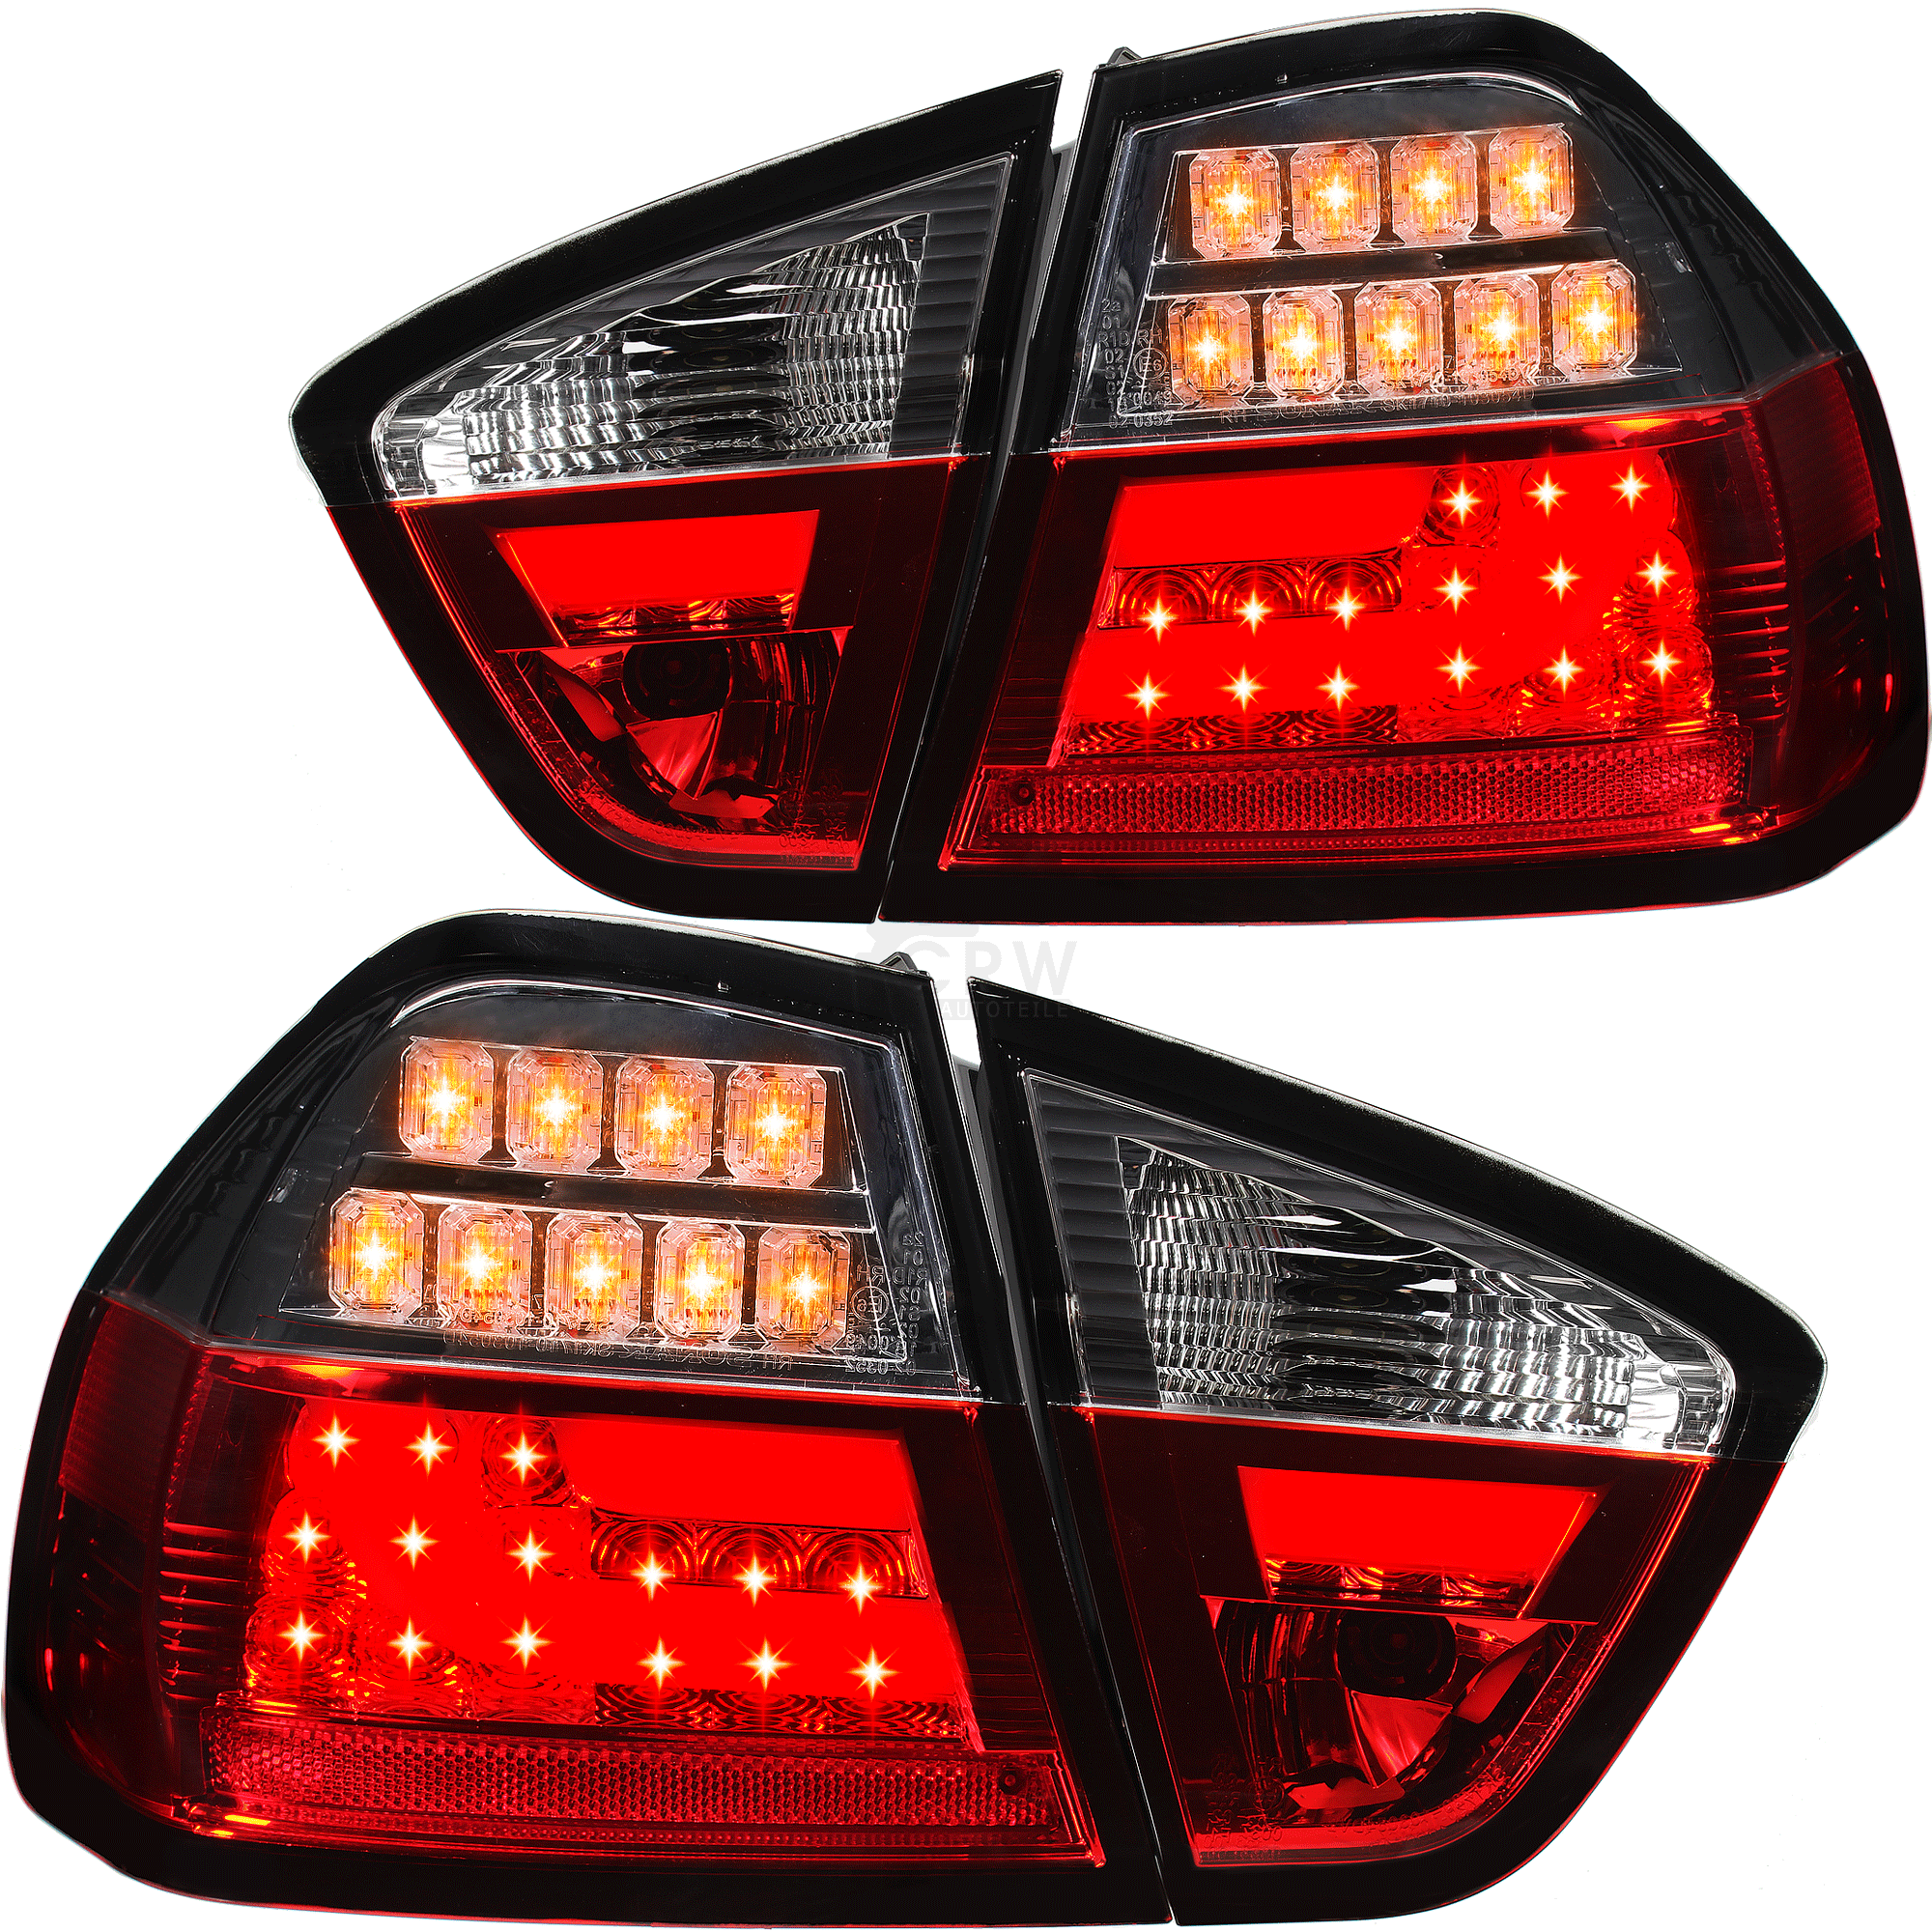 LED Lightbar Rückleuchten Set für BMW 3er E90 Limousine Bj. 05-08 rot weiß chrom